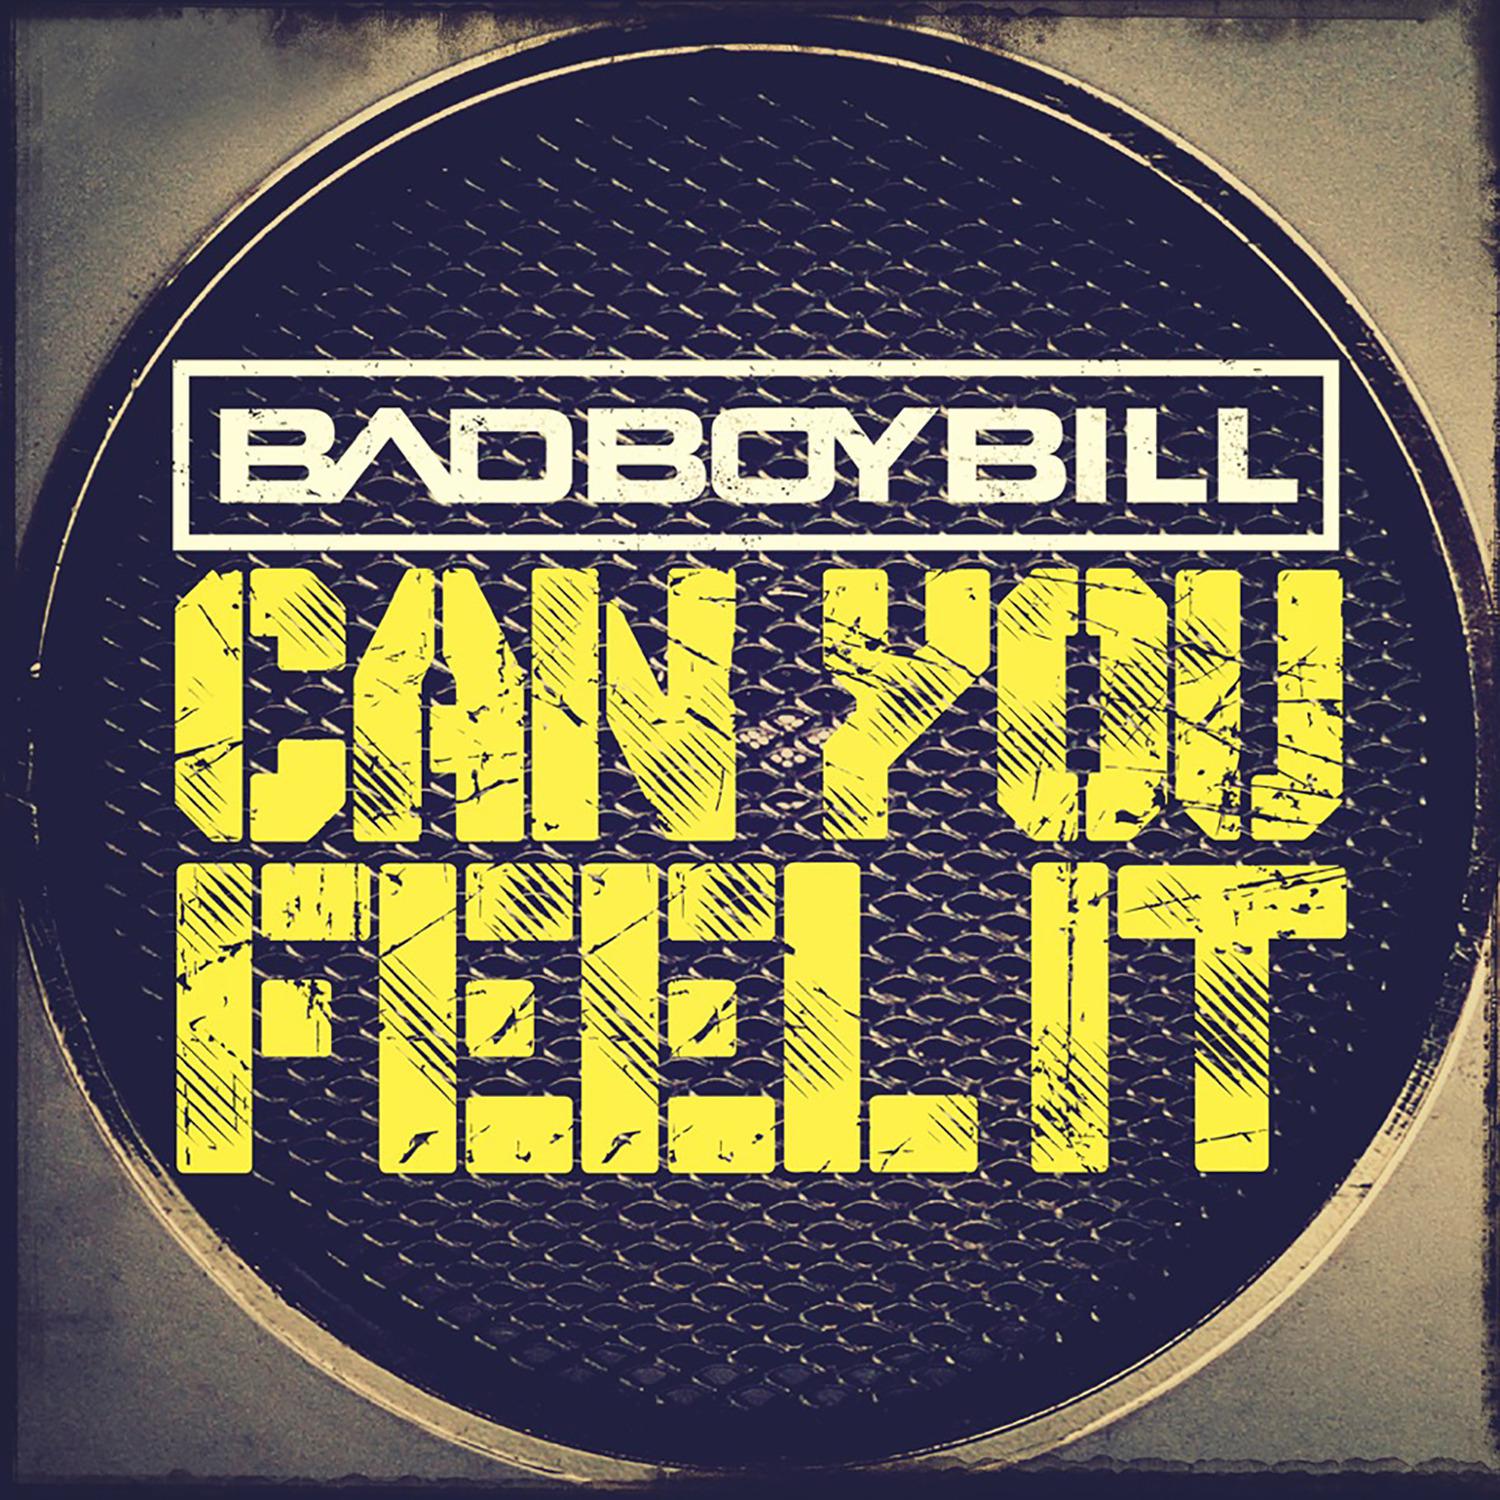 Bad Boy Bill - Can You Feel It